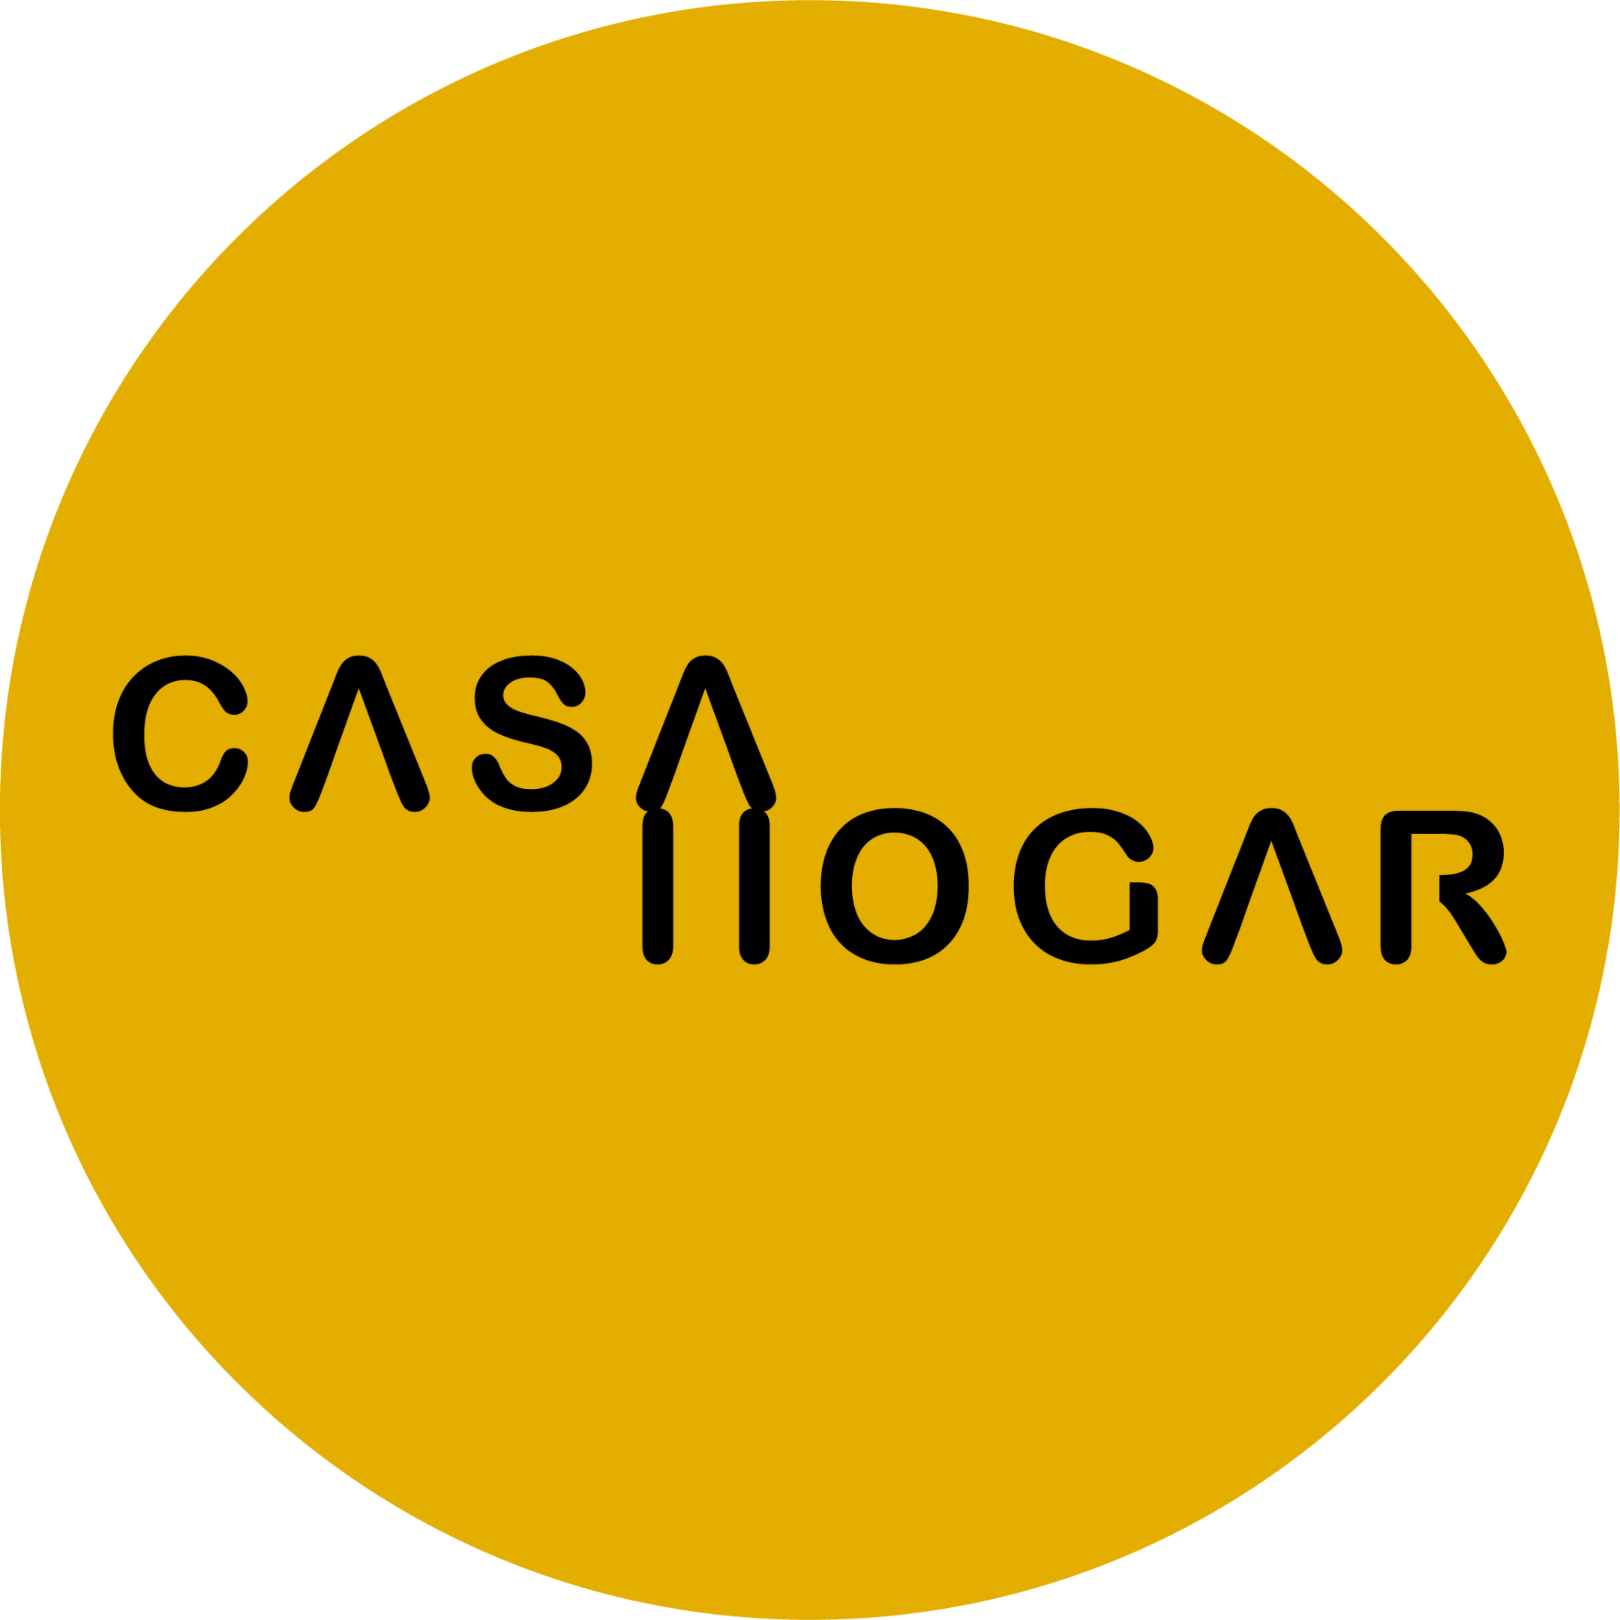 (Casa Hogar) (c) Casa Hogar